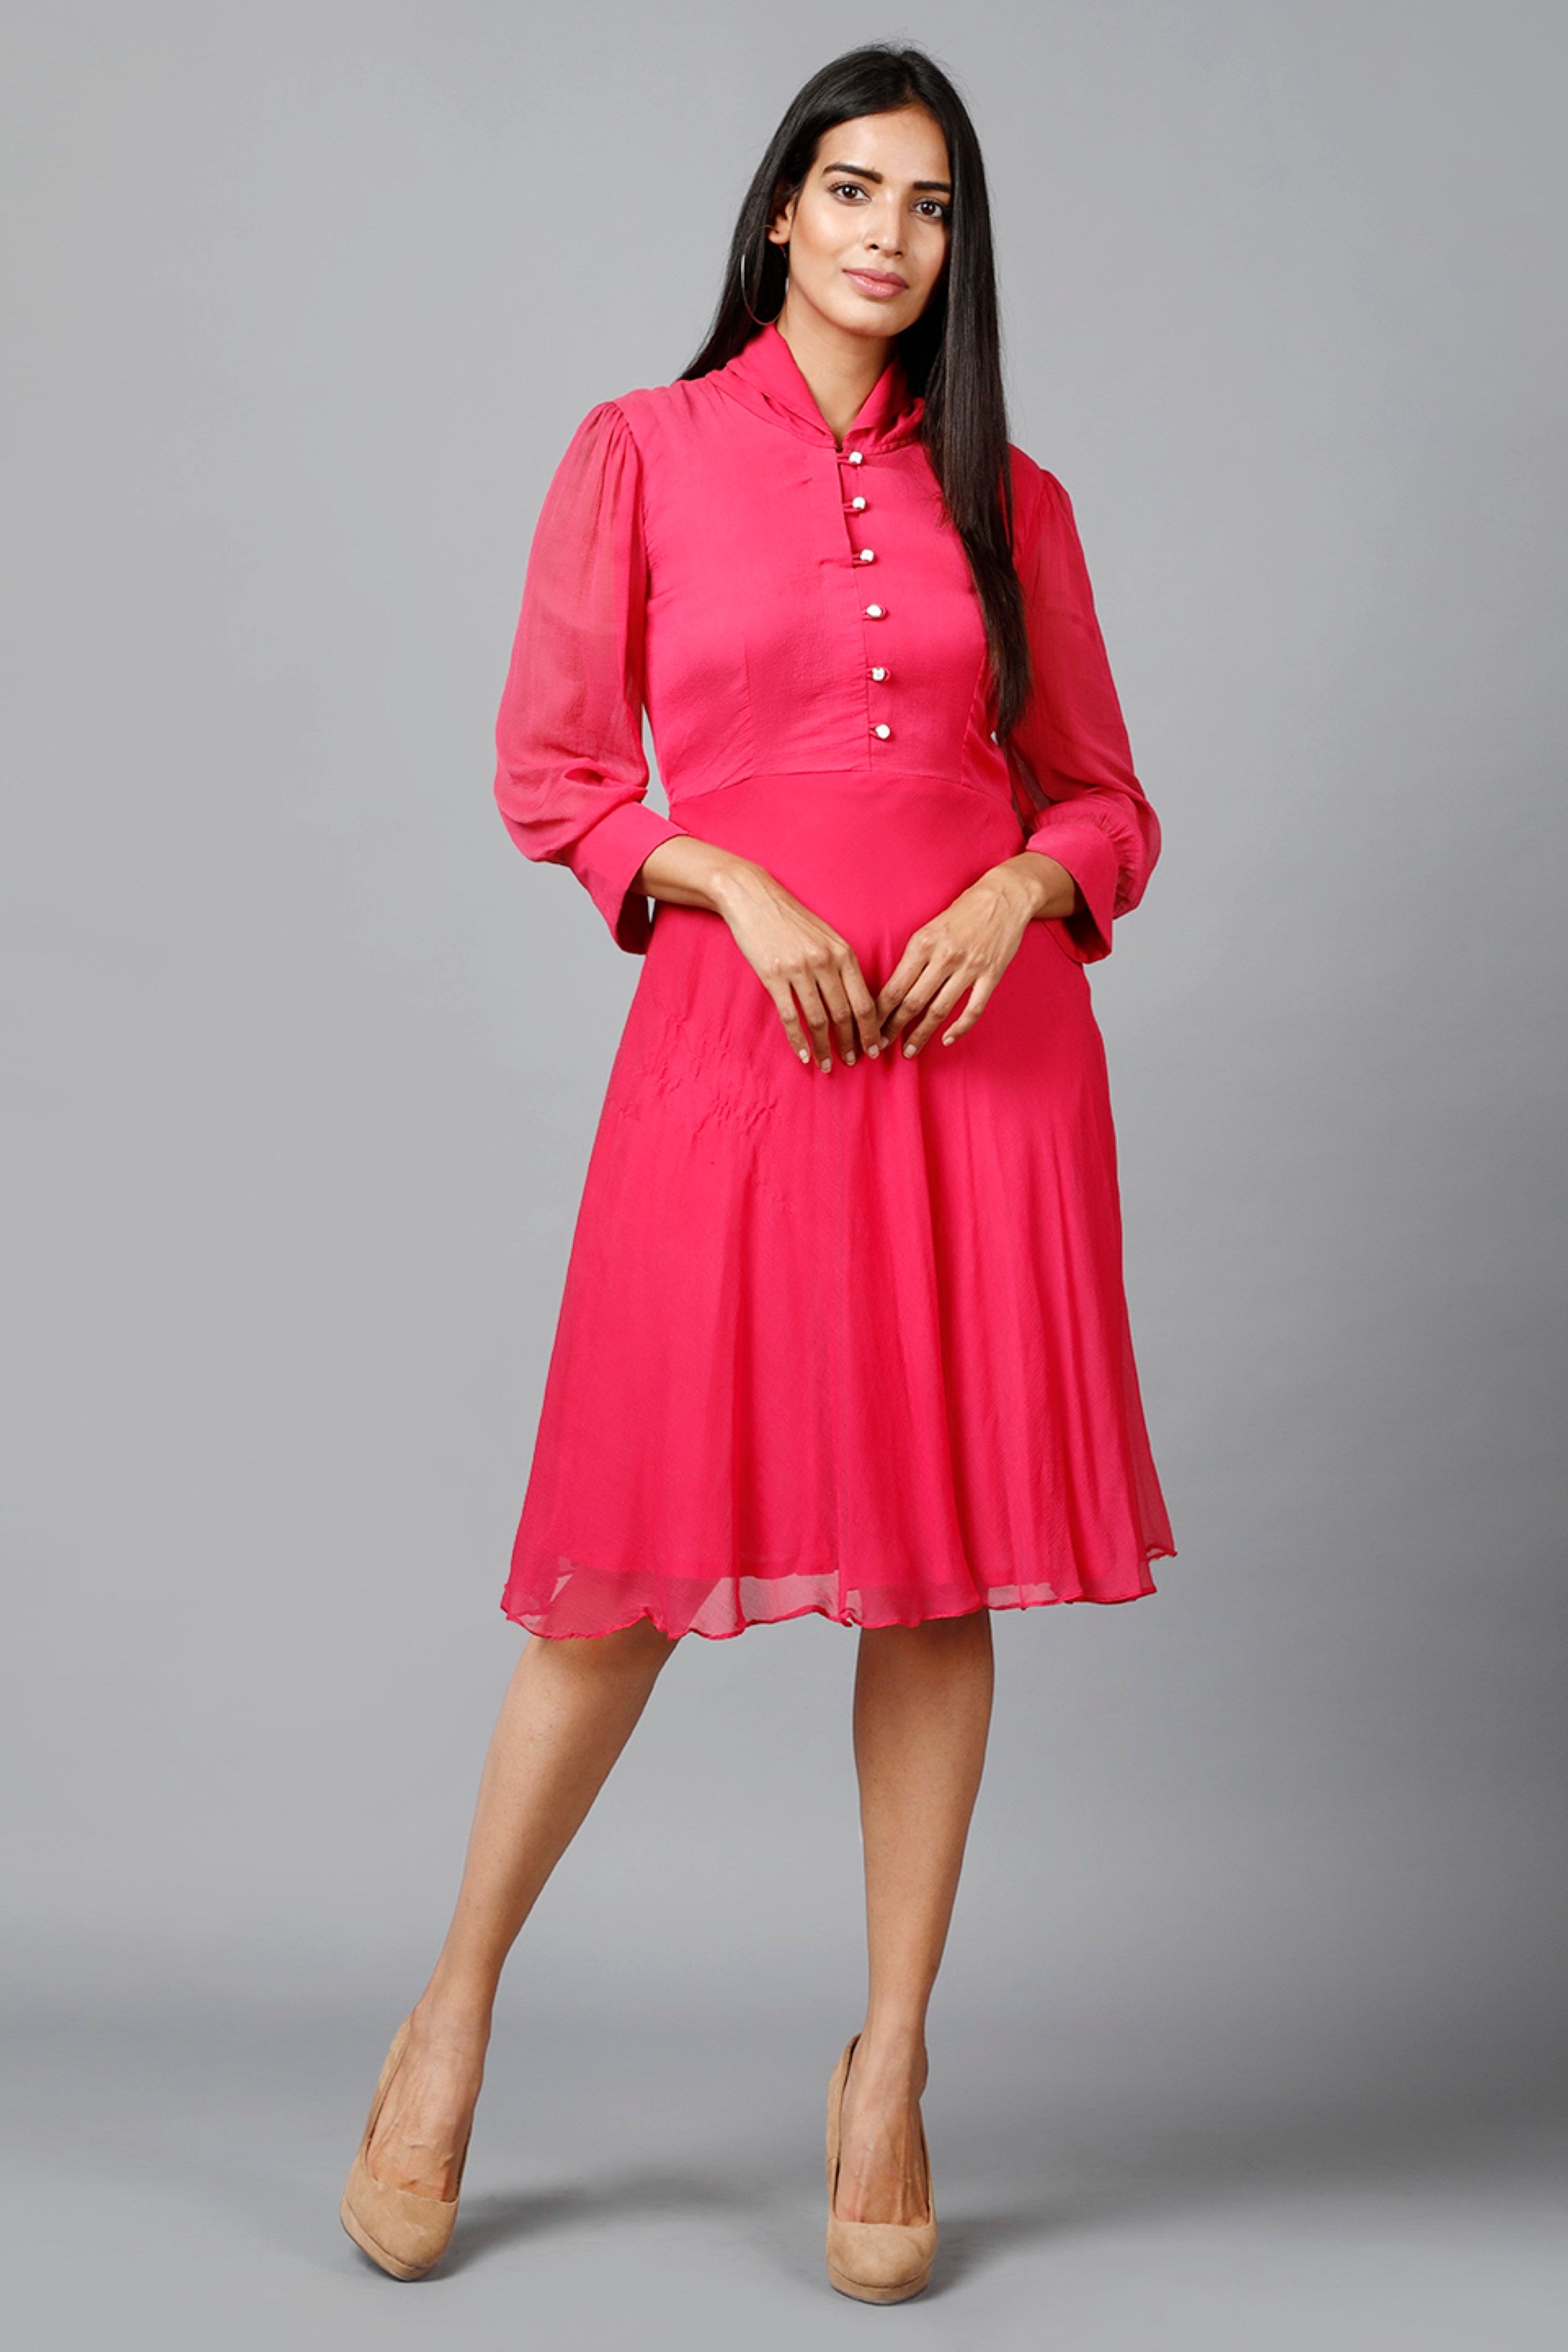 Women's Pink Chiiffon Casual Midi Dress - MIRACOLOS by Ruchi